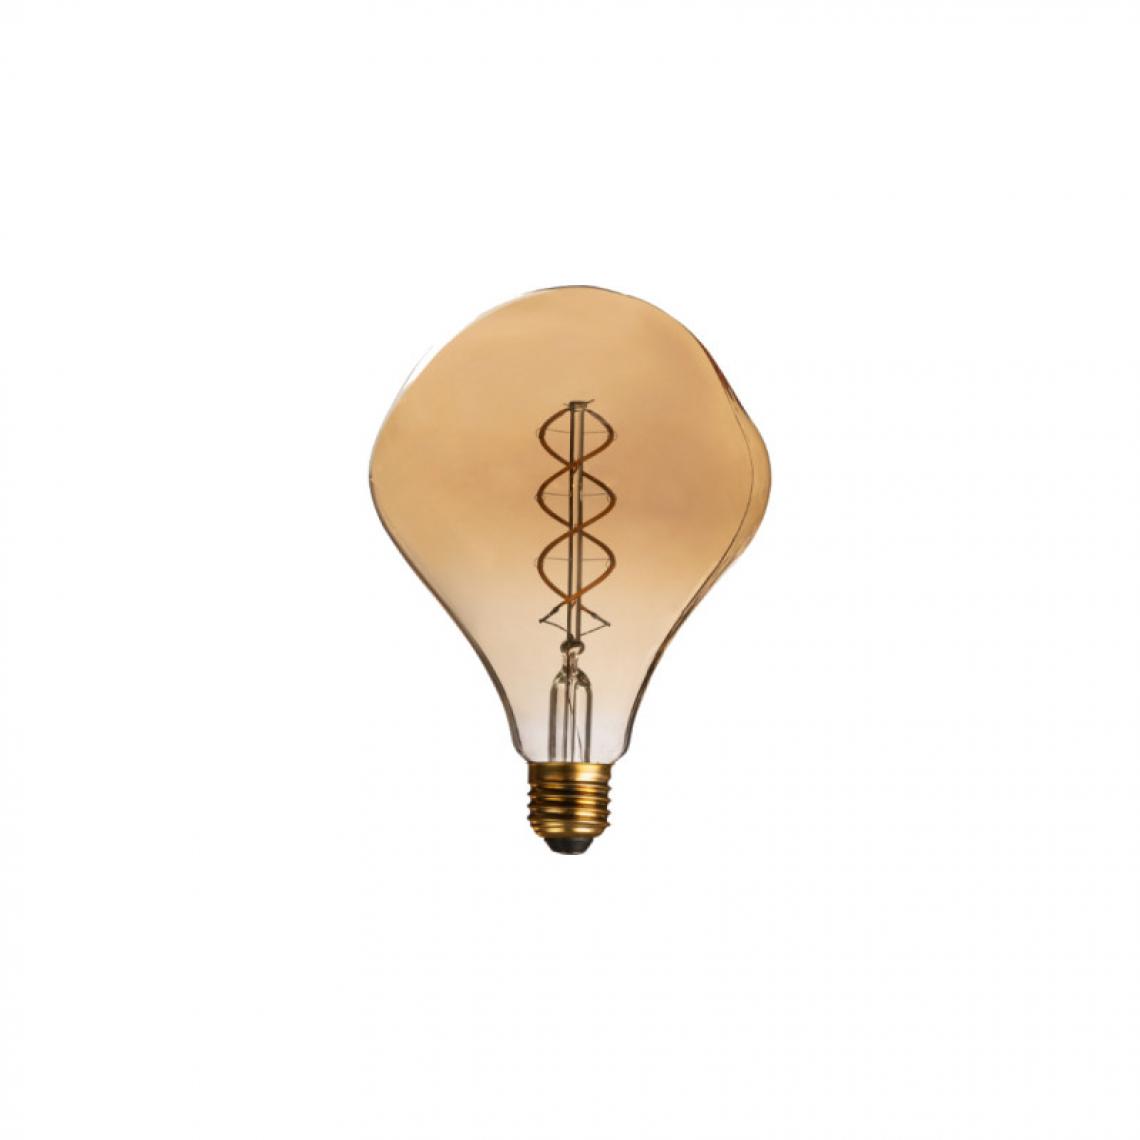 Xxcell - Ampoule LED rétro ambrée XXCELL - 5 W - 380 lumens - 2100 K - E27 - Ampoules LED